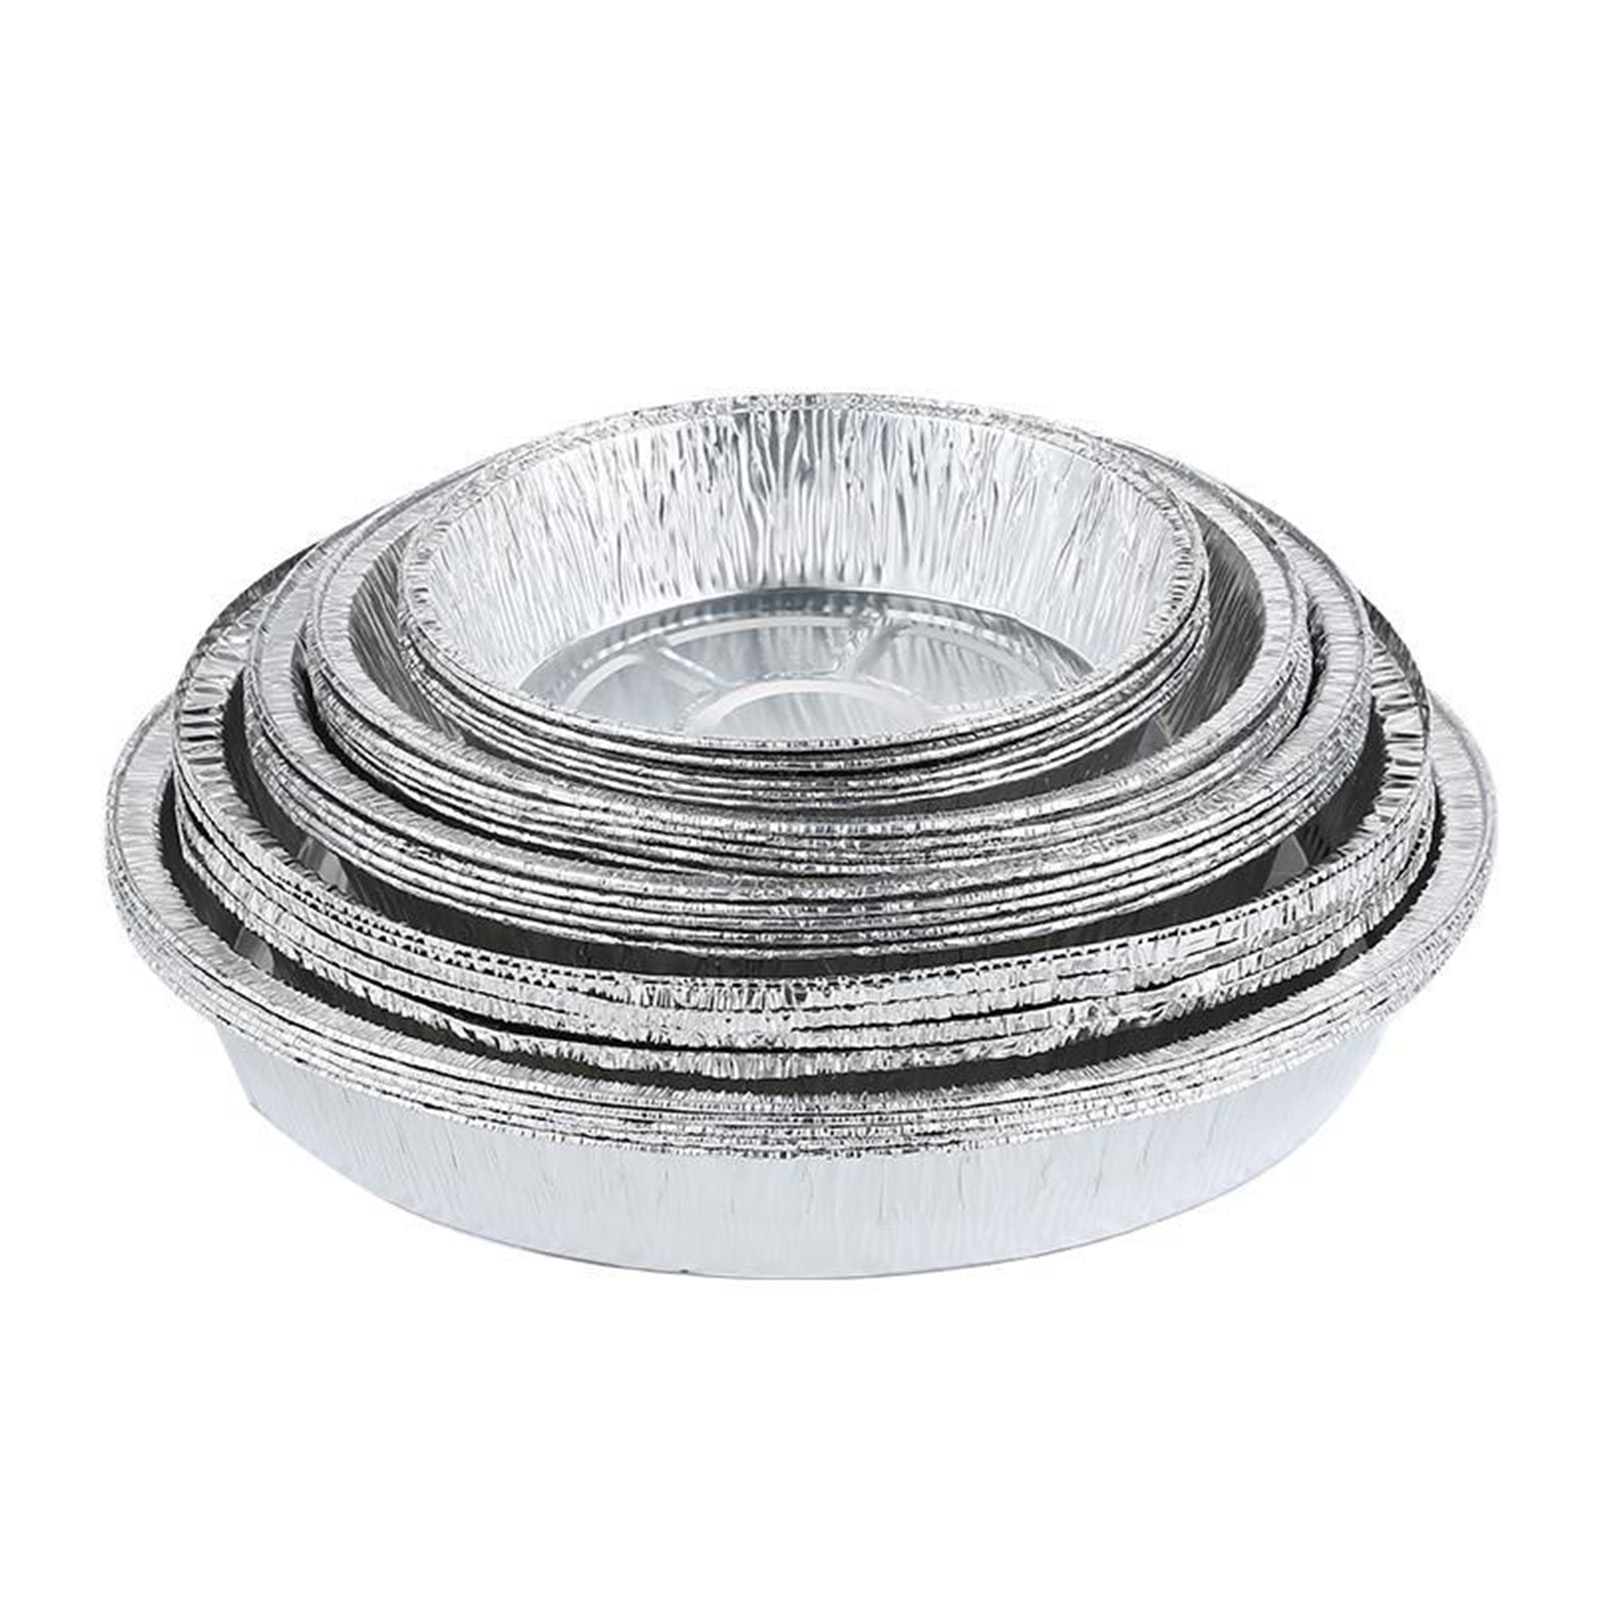 6 tum/7 tum rund frisk aluminiumfolie Pan Matbehållare Bekväma foliebrickor för bakning/lagring/uppvärmning/måltidsförberedelse